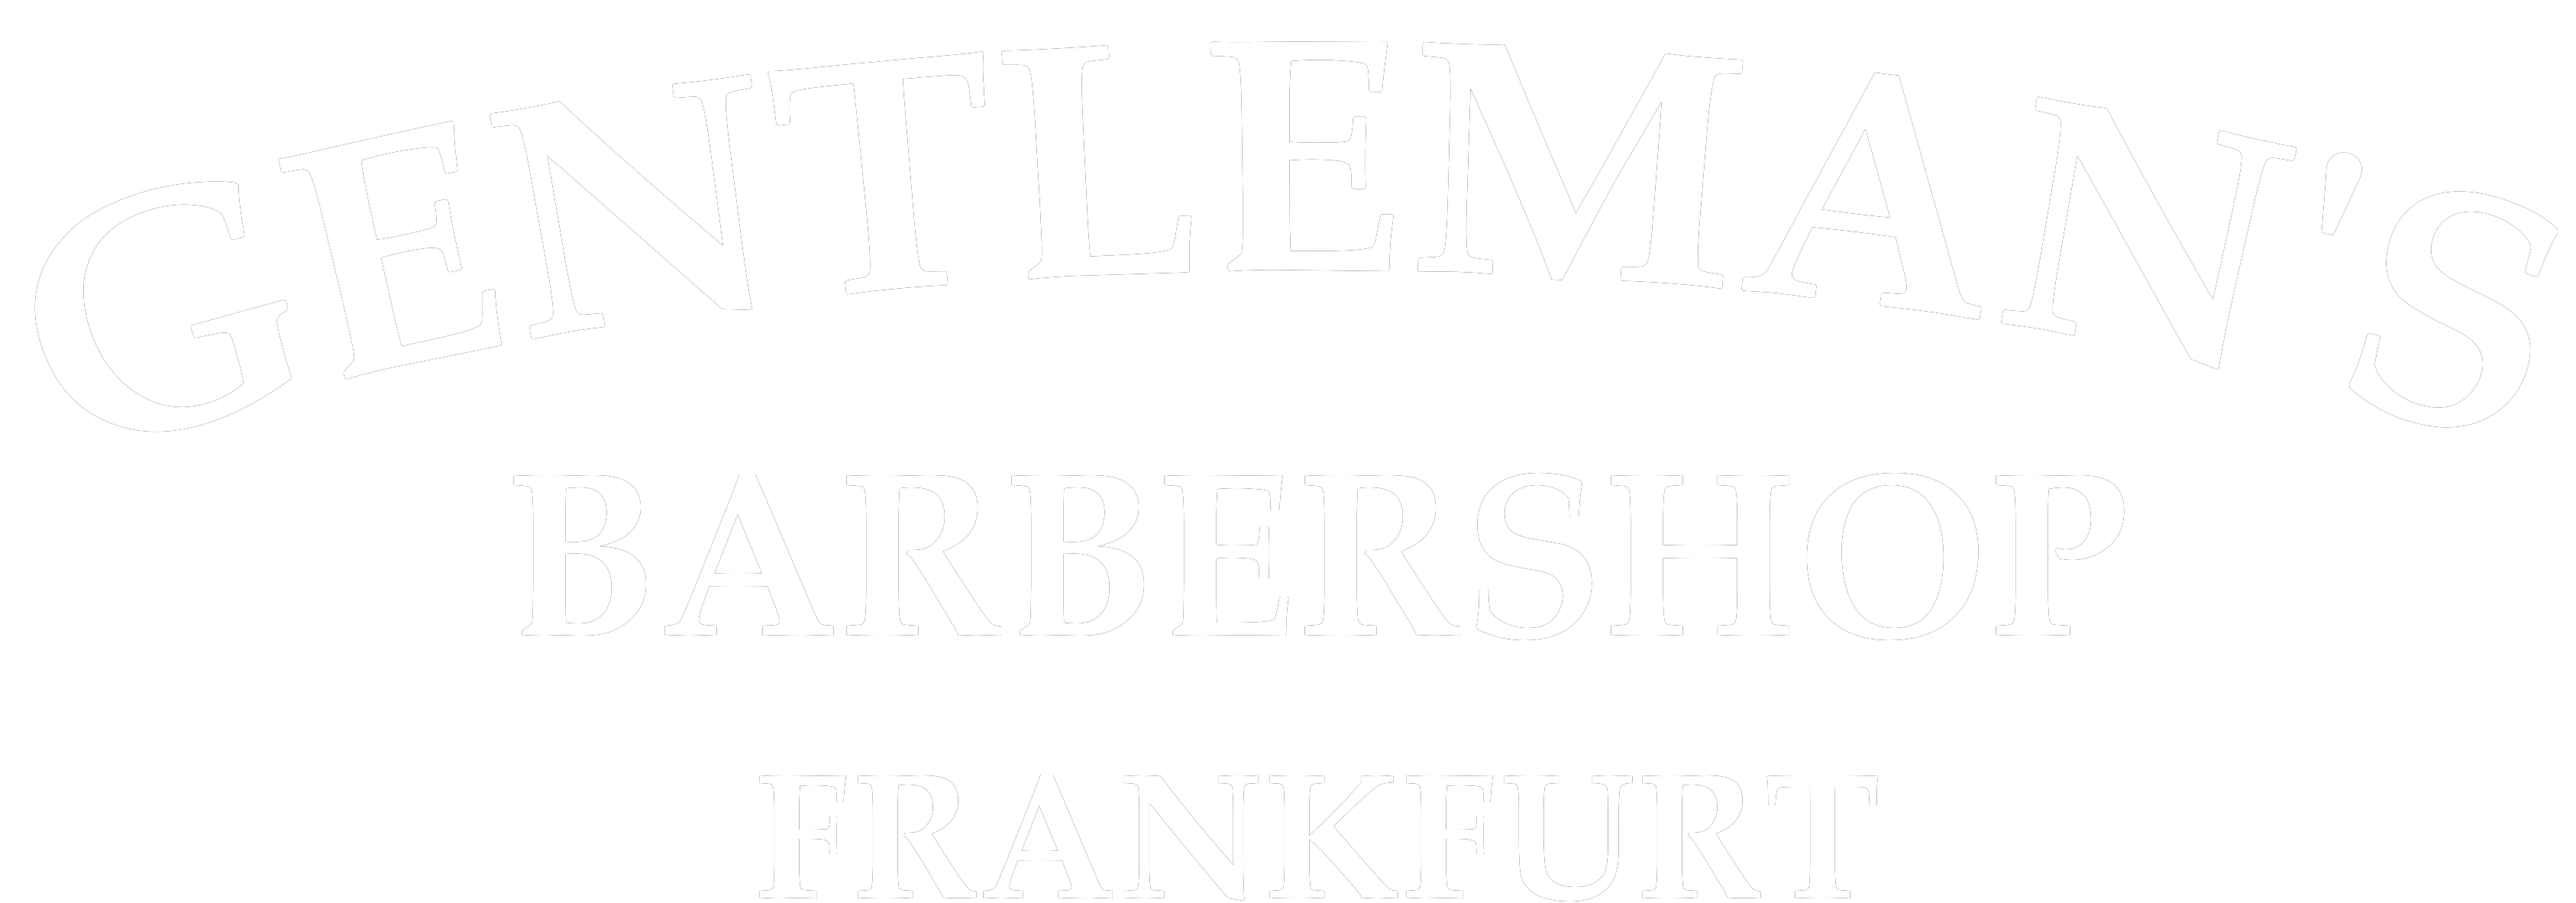 Gentleman's Barbershop Frankfurt